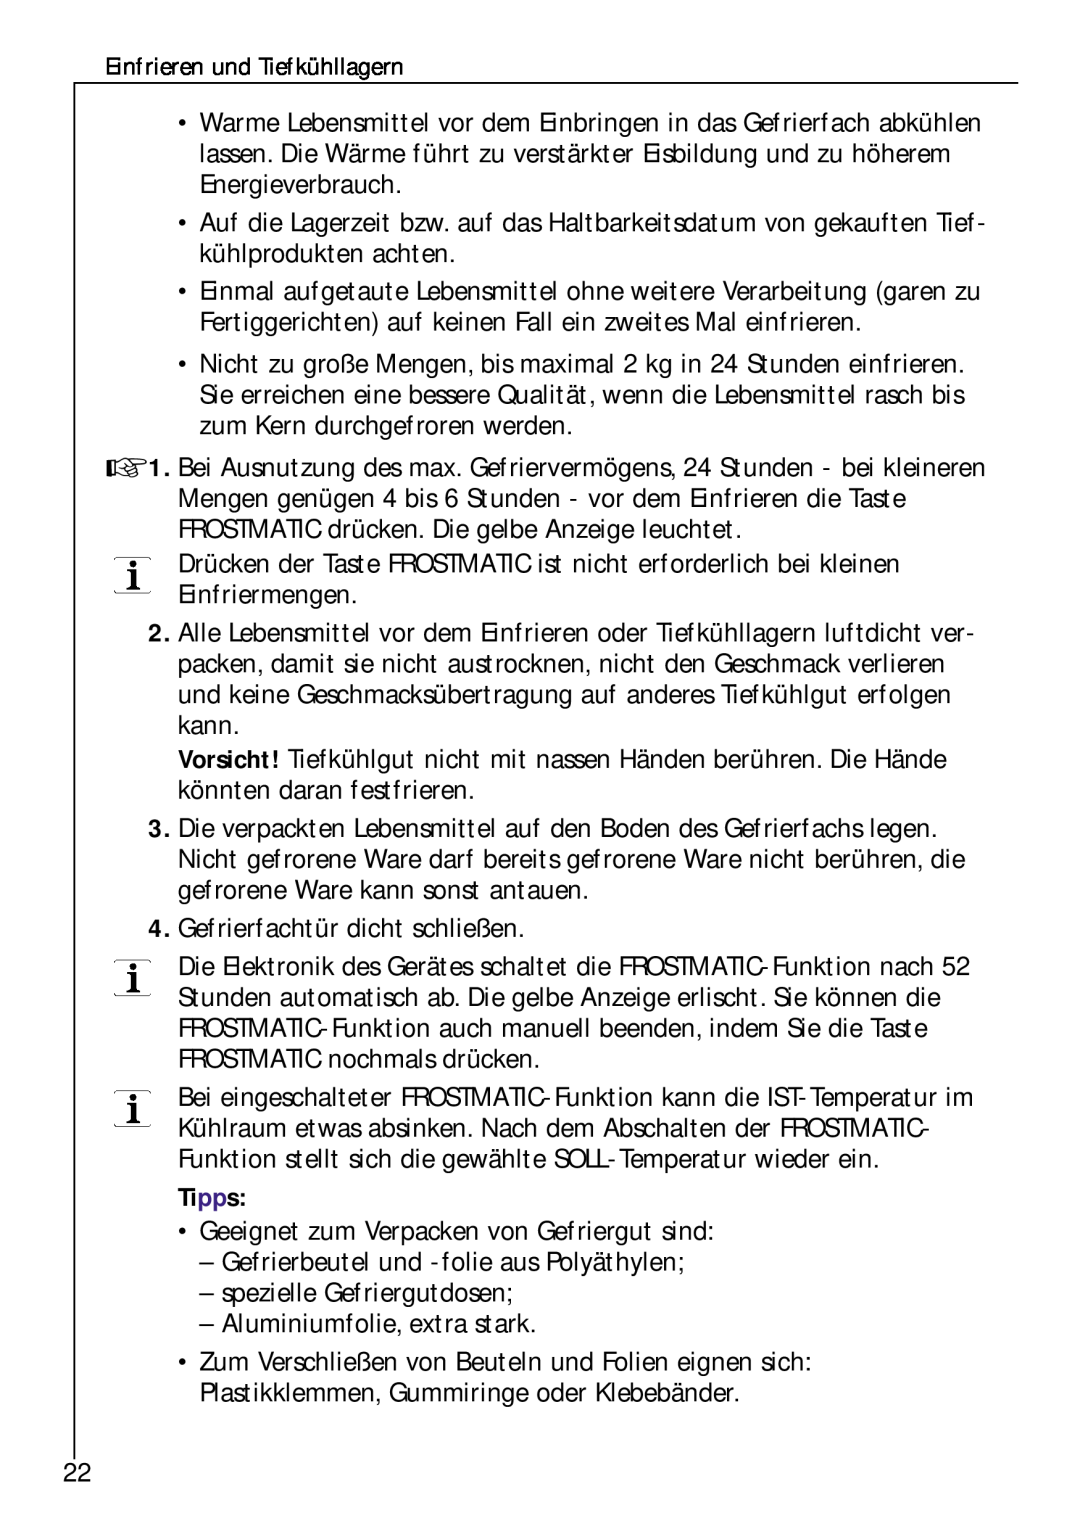 Electrolux Z 9 18 42-4 I user manual Gefrierfachtür dicht schließen, Tipps 